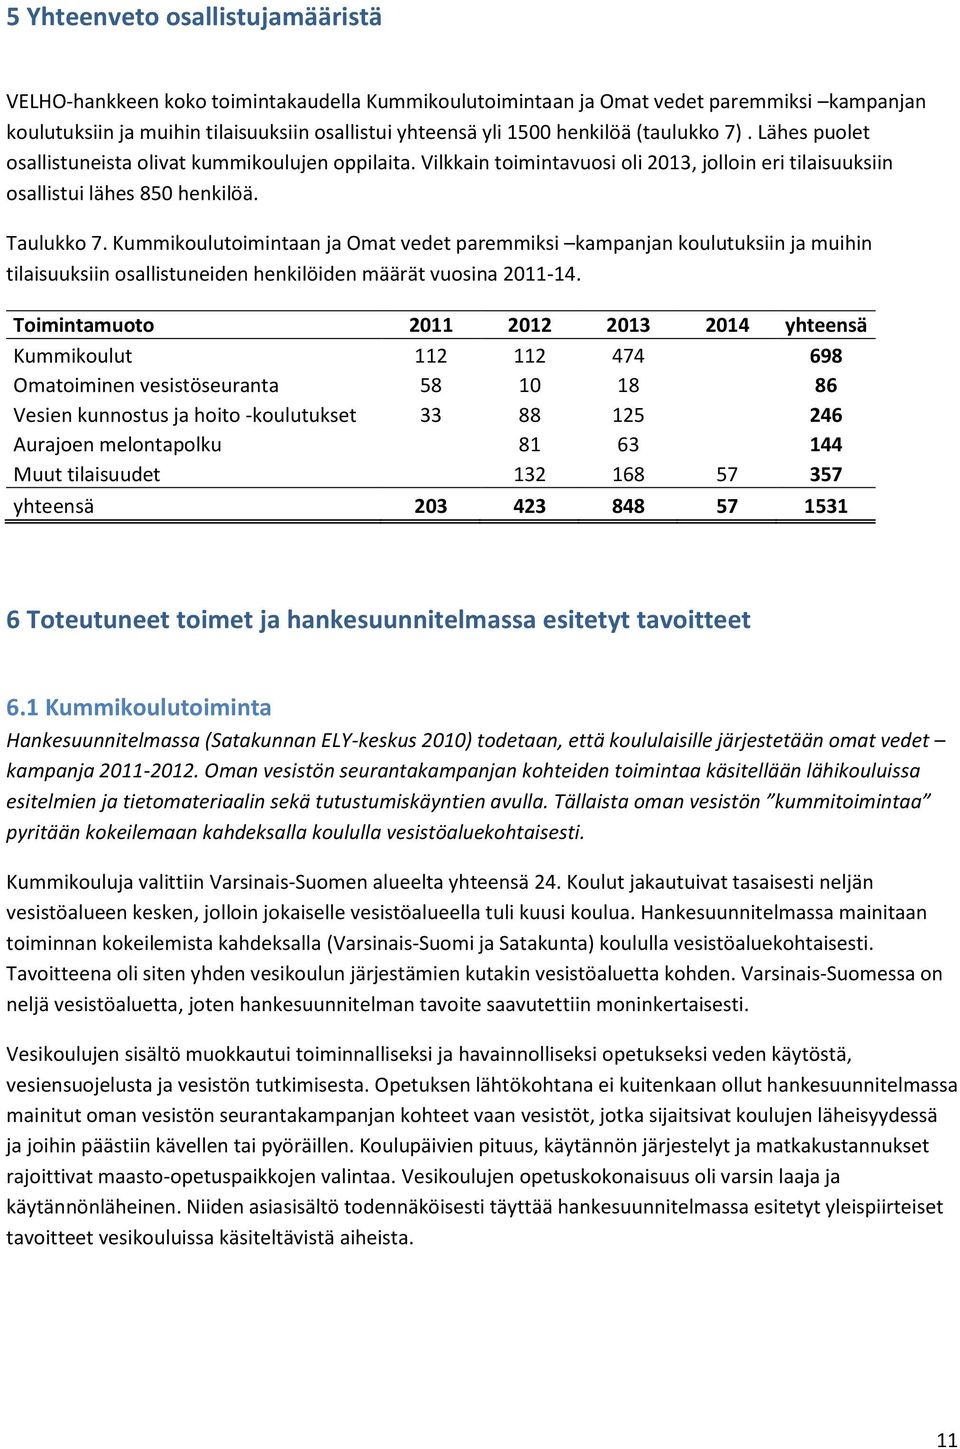 Kummikoulutoimintaan ja Omat vedet paremmiksi kampanjan koulutuksiin ja muihin tilaisuuksiin osallistuneiden henkilöiden määrät vuosina 2011-14.